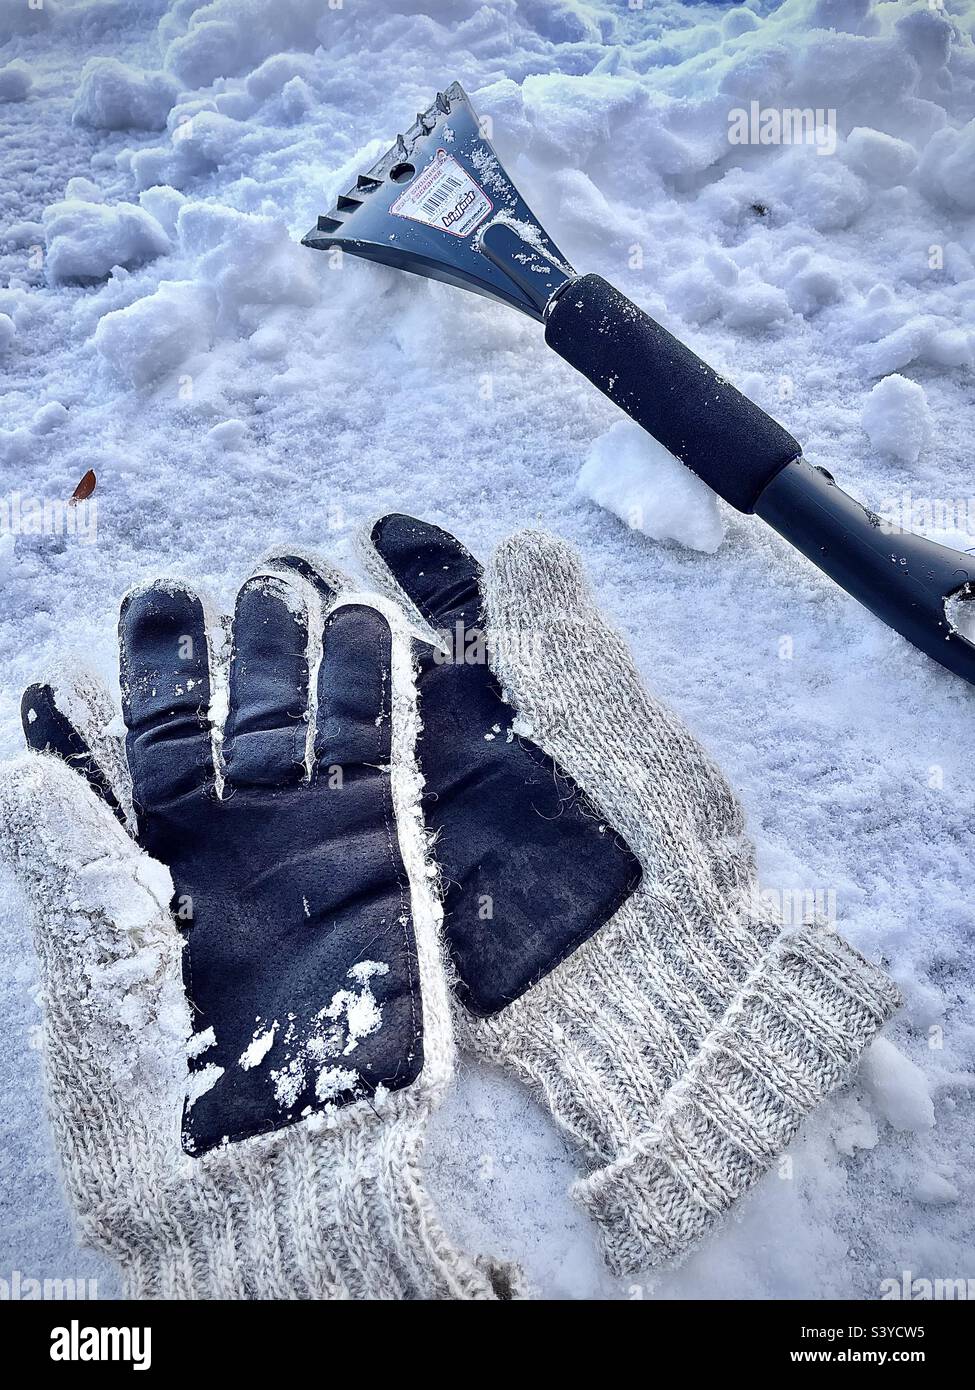 Un paio di guanti di lana e un attrezzo per neve/ghiaccio, un'estremità un raschietto per ghiaccio, l'altra estremità un pennello da neve. Una vita ancora ventosa si è imposta su un cofano di automobile coperto di neve dopo una tempesta di neve dello Utah, Stati Uniti. Foto Stock